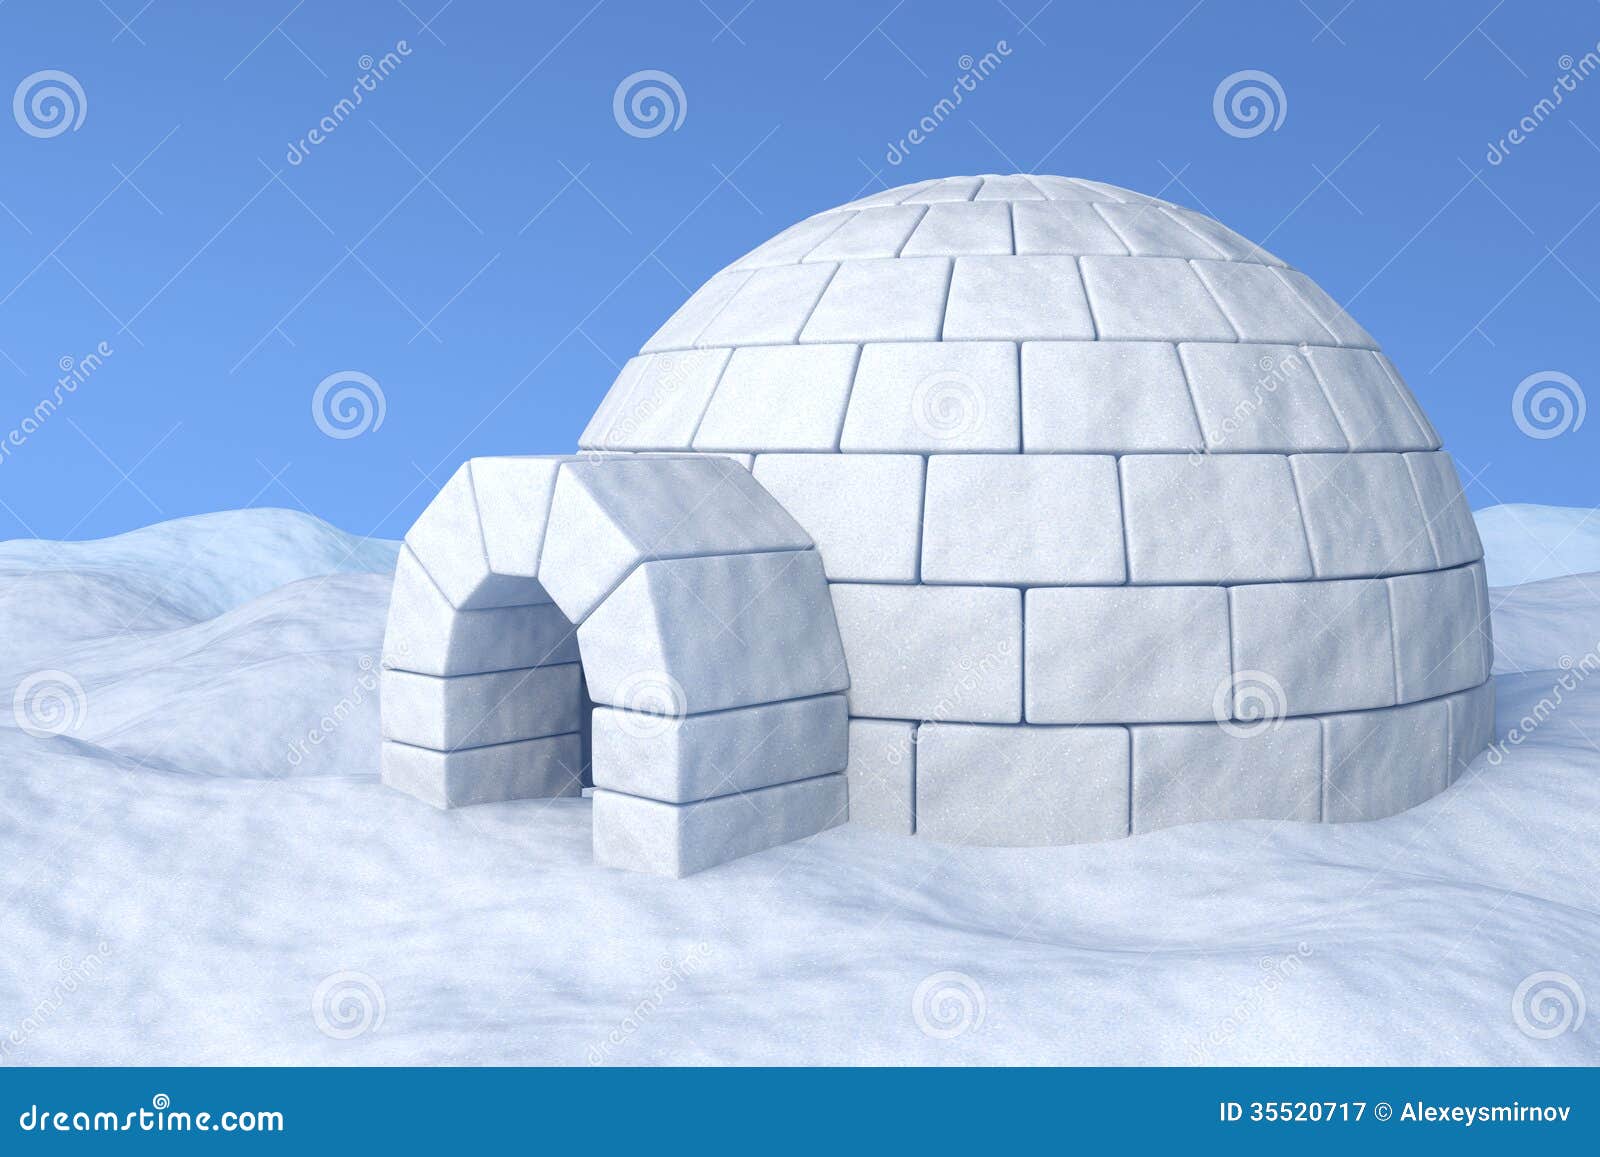 هذا الأوغلو كم كنت اشك في ميوله لبشار ونظام الشبيحة هنا .. واليوم تأكدت !!! Igloo-snow-icehouse-white-under-blue-sky-three-dimensional-illustration-35520717